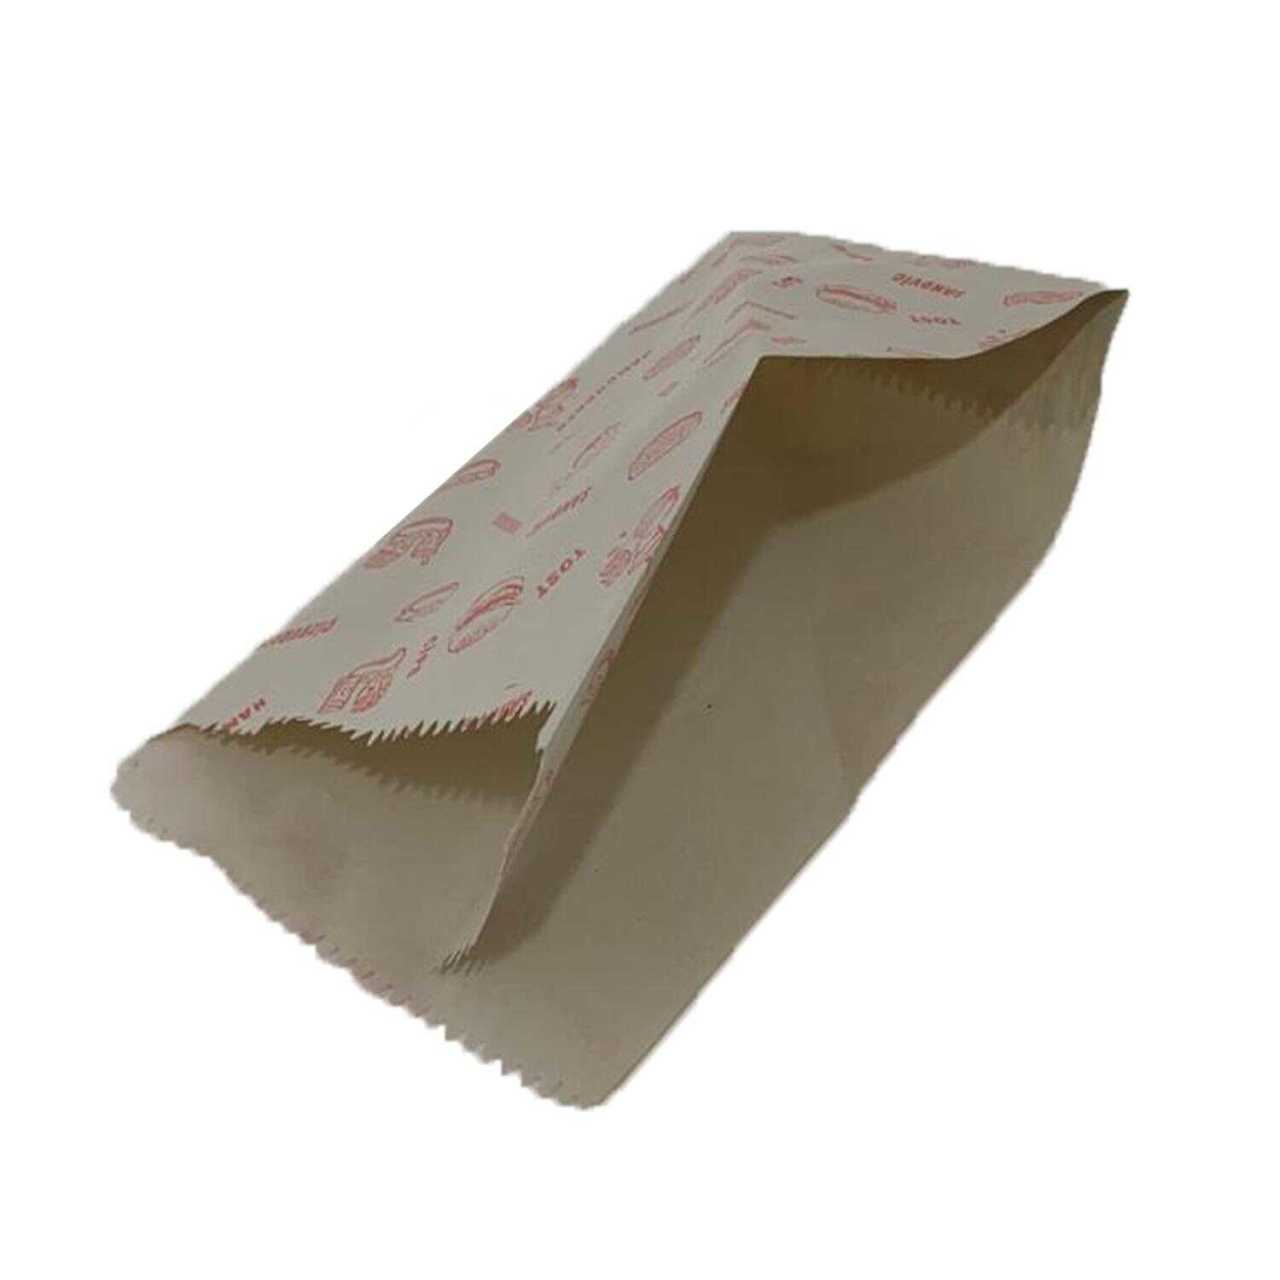 Kese Kağıdı Kuşe Piyasa Baskılı Sandviç 1 Kilo